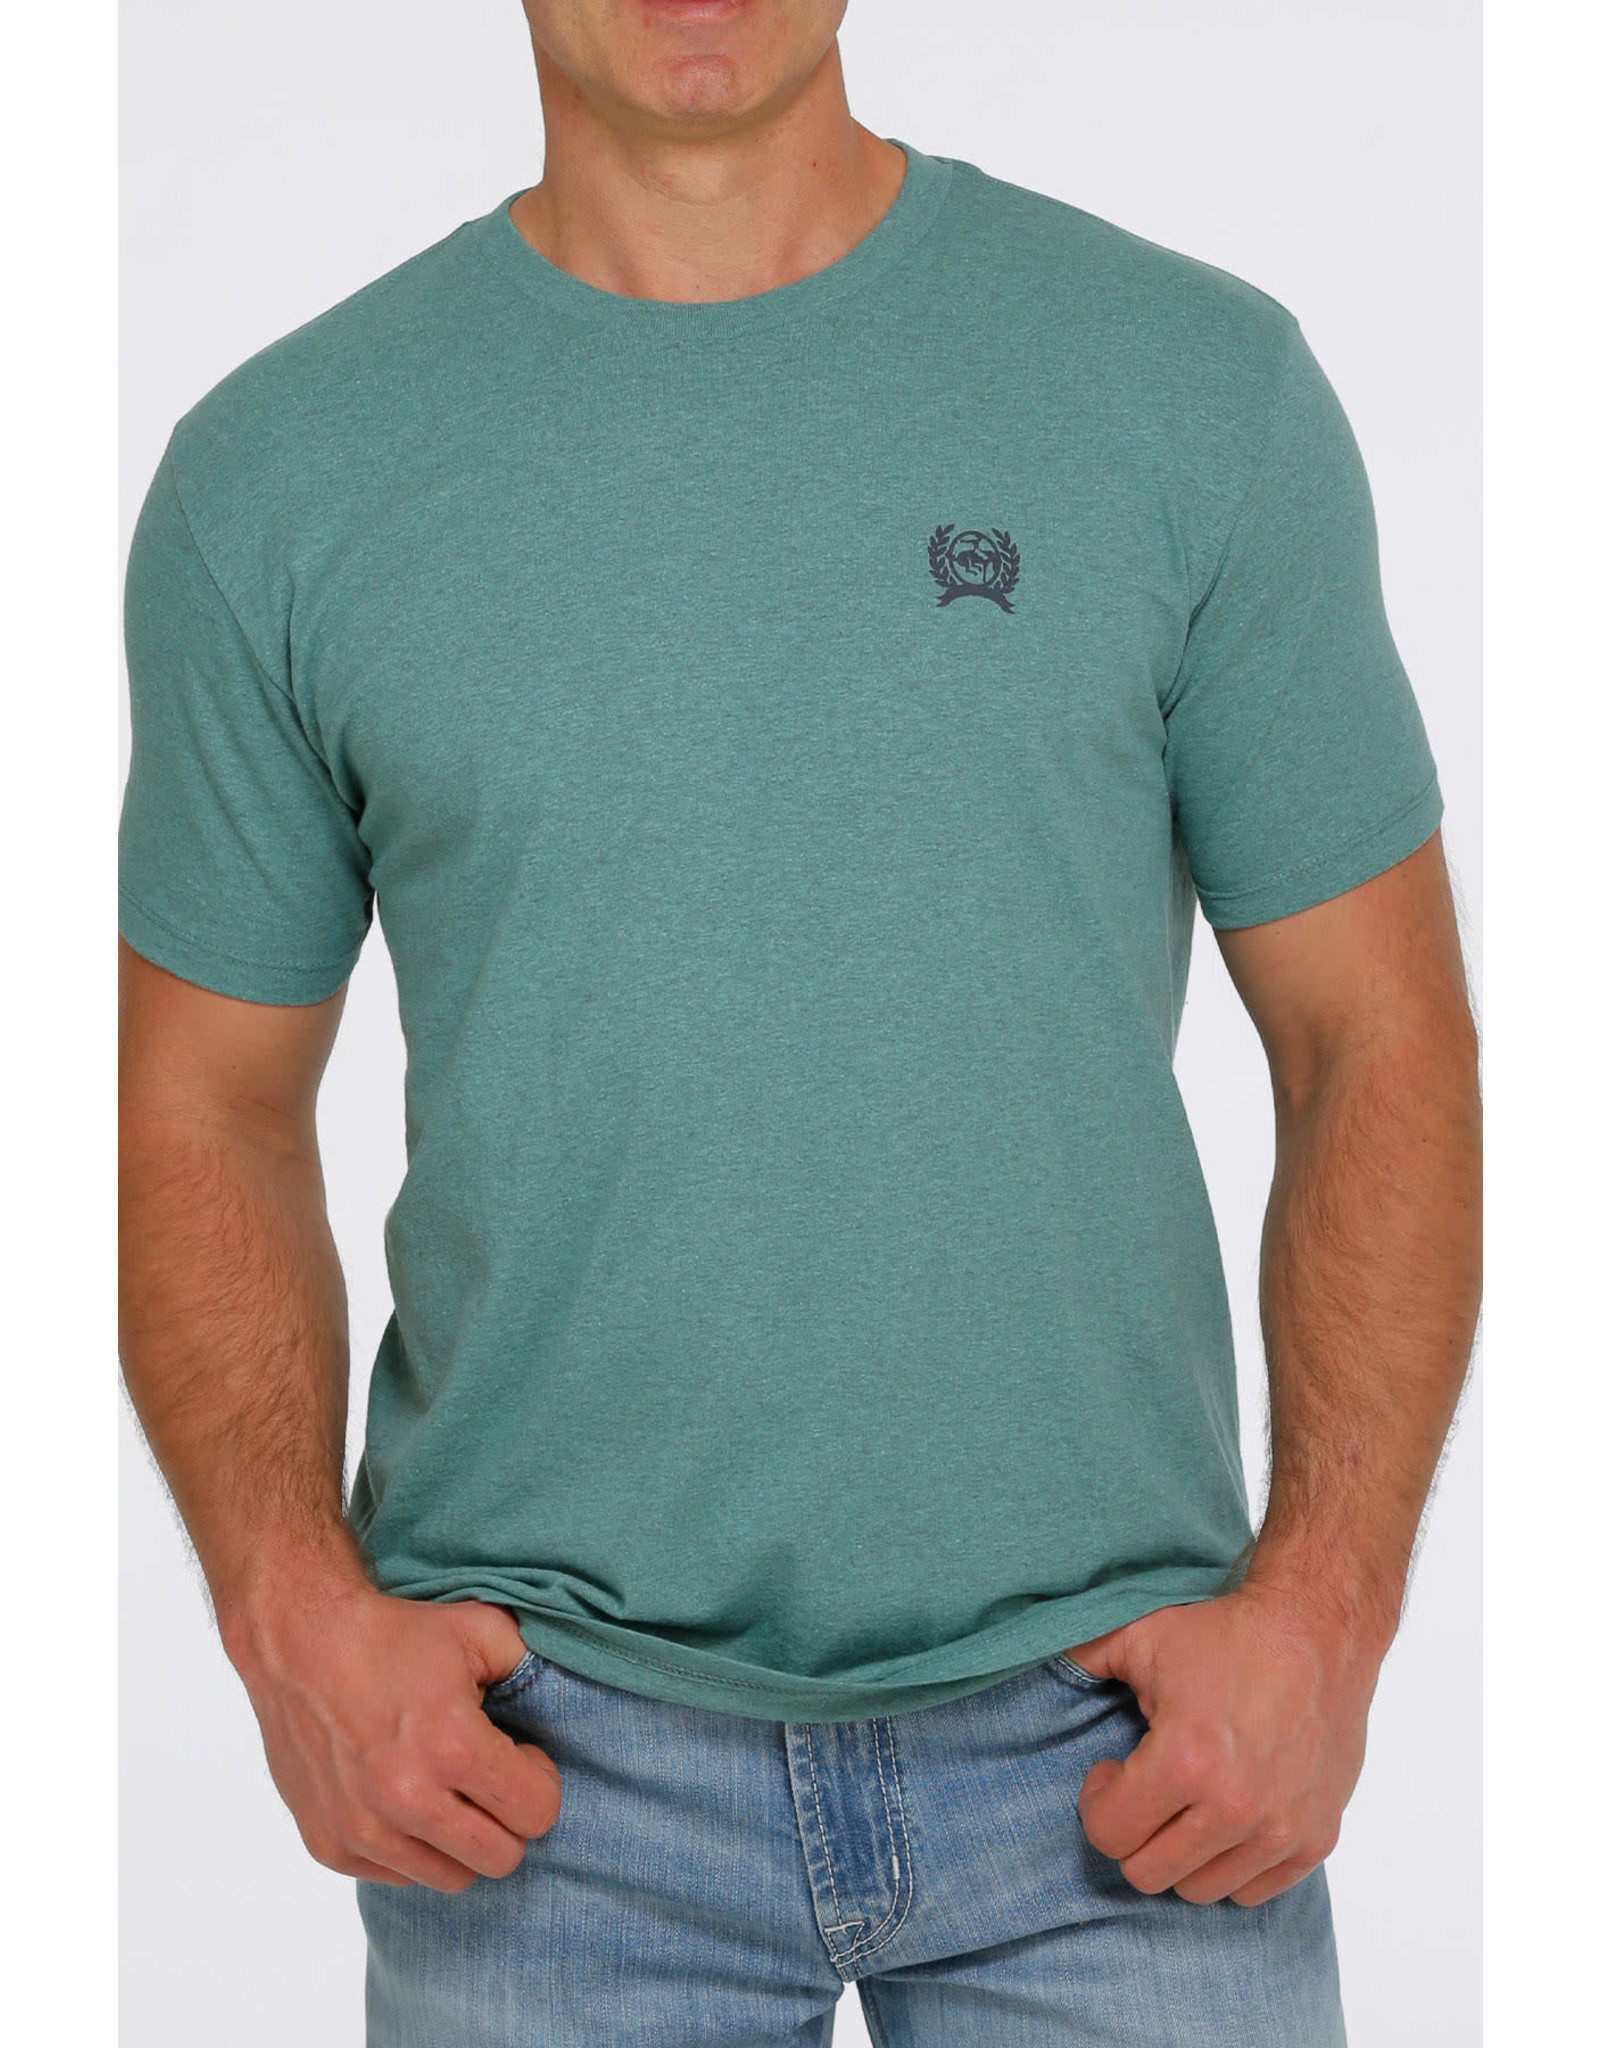 Cinch Men's Hunter Green Buffalo MTT1690490 T-Shirt